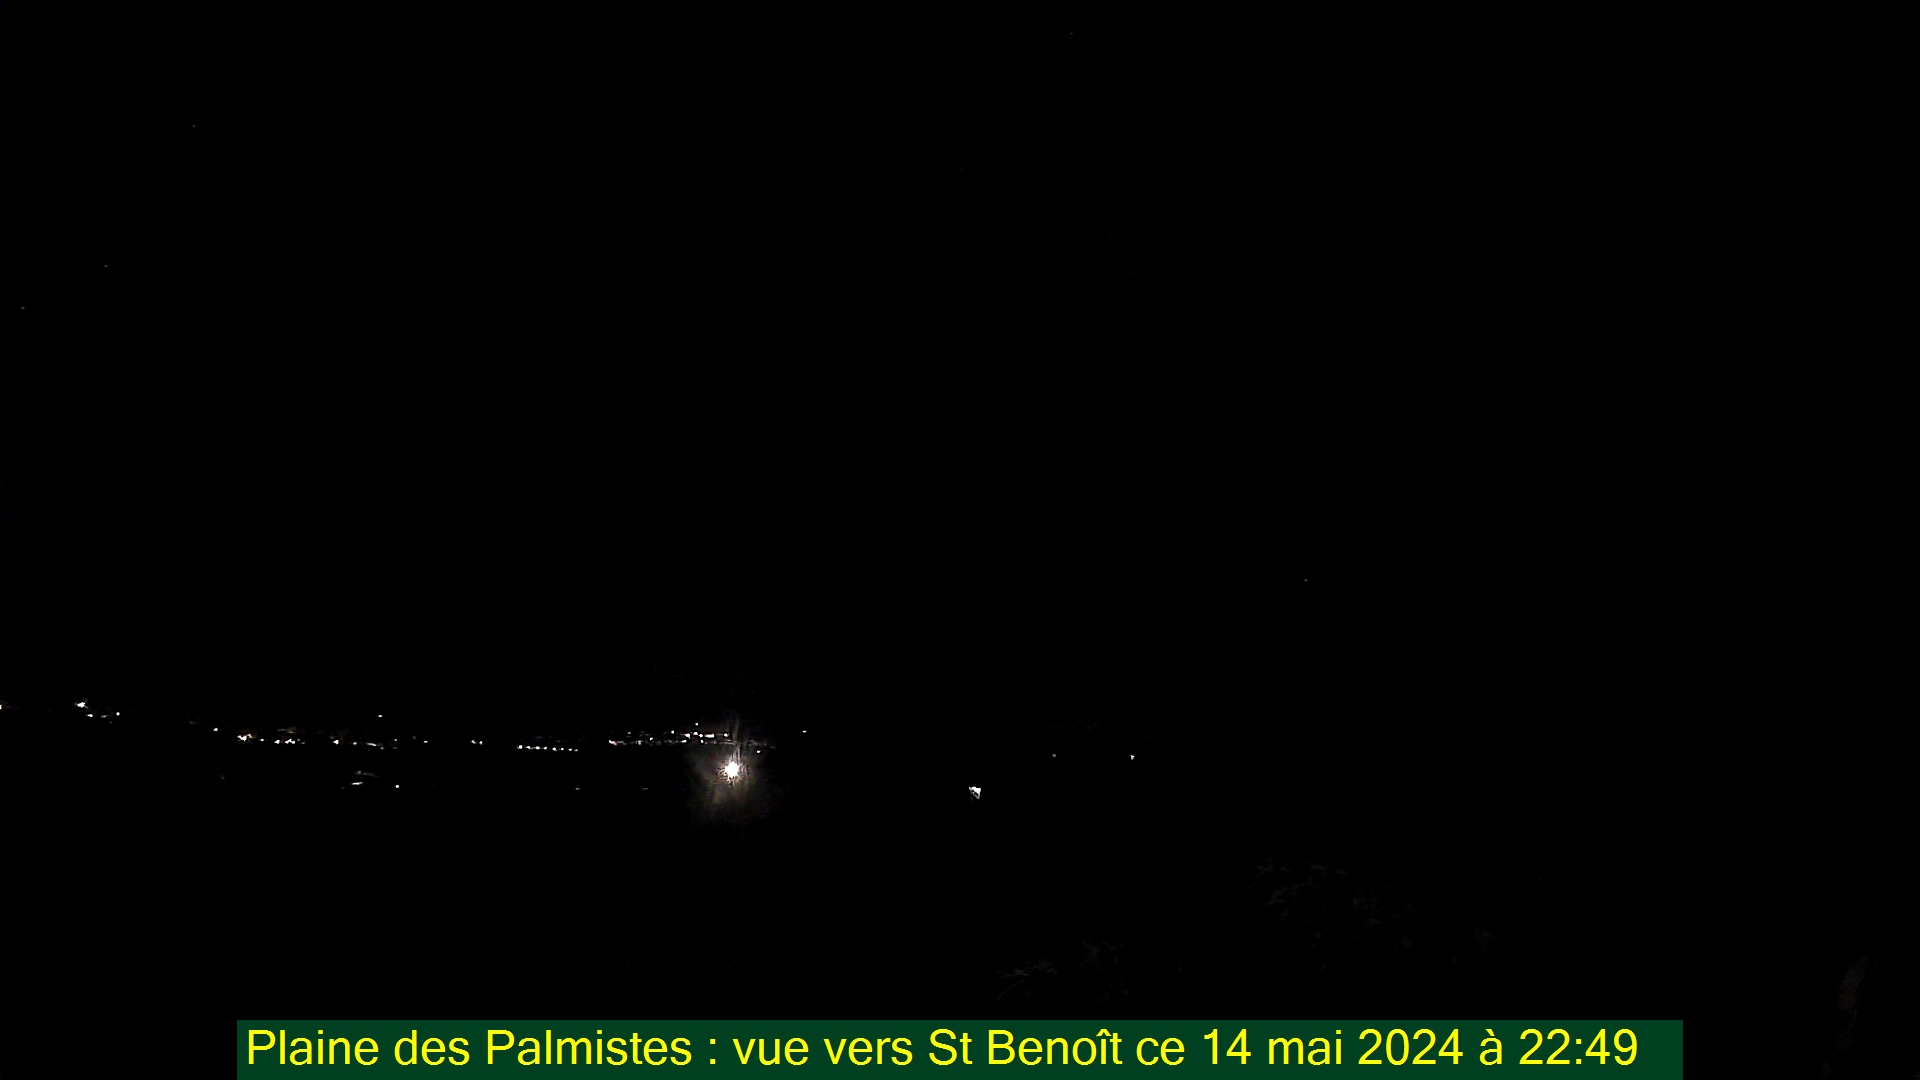 Saint-Denis (Réunion) Sun. 22:50